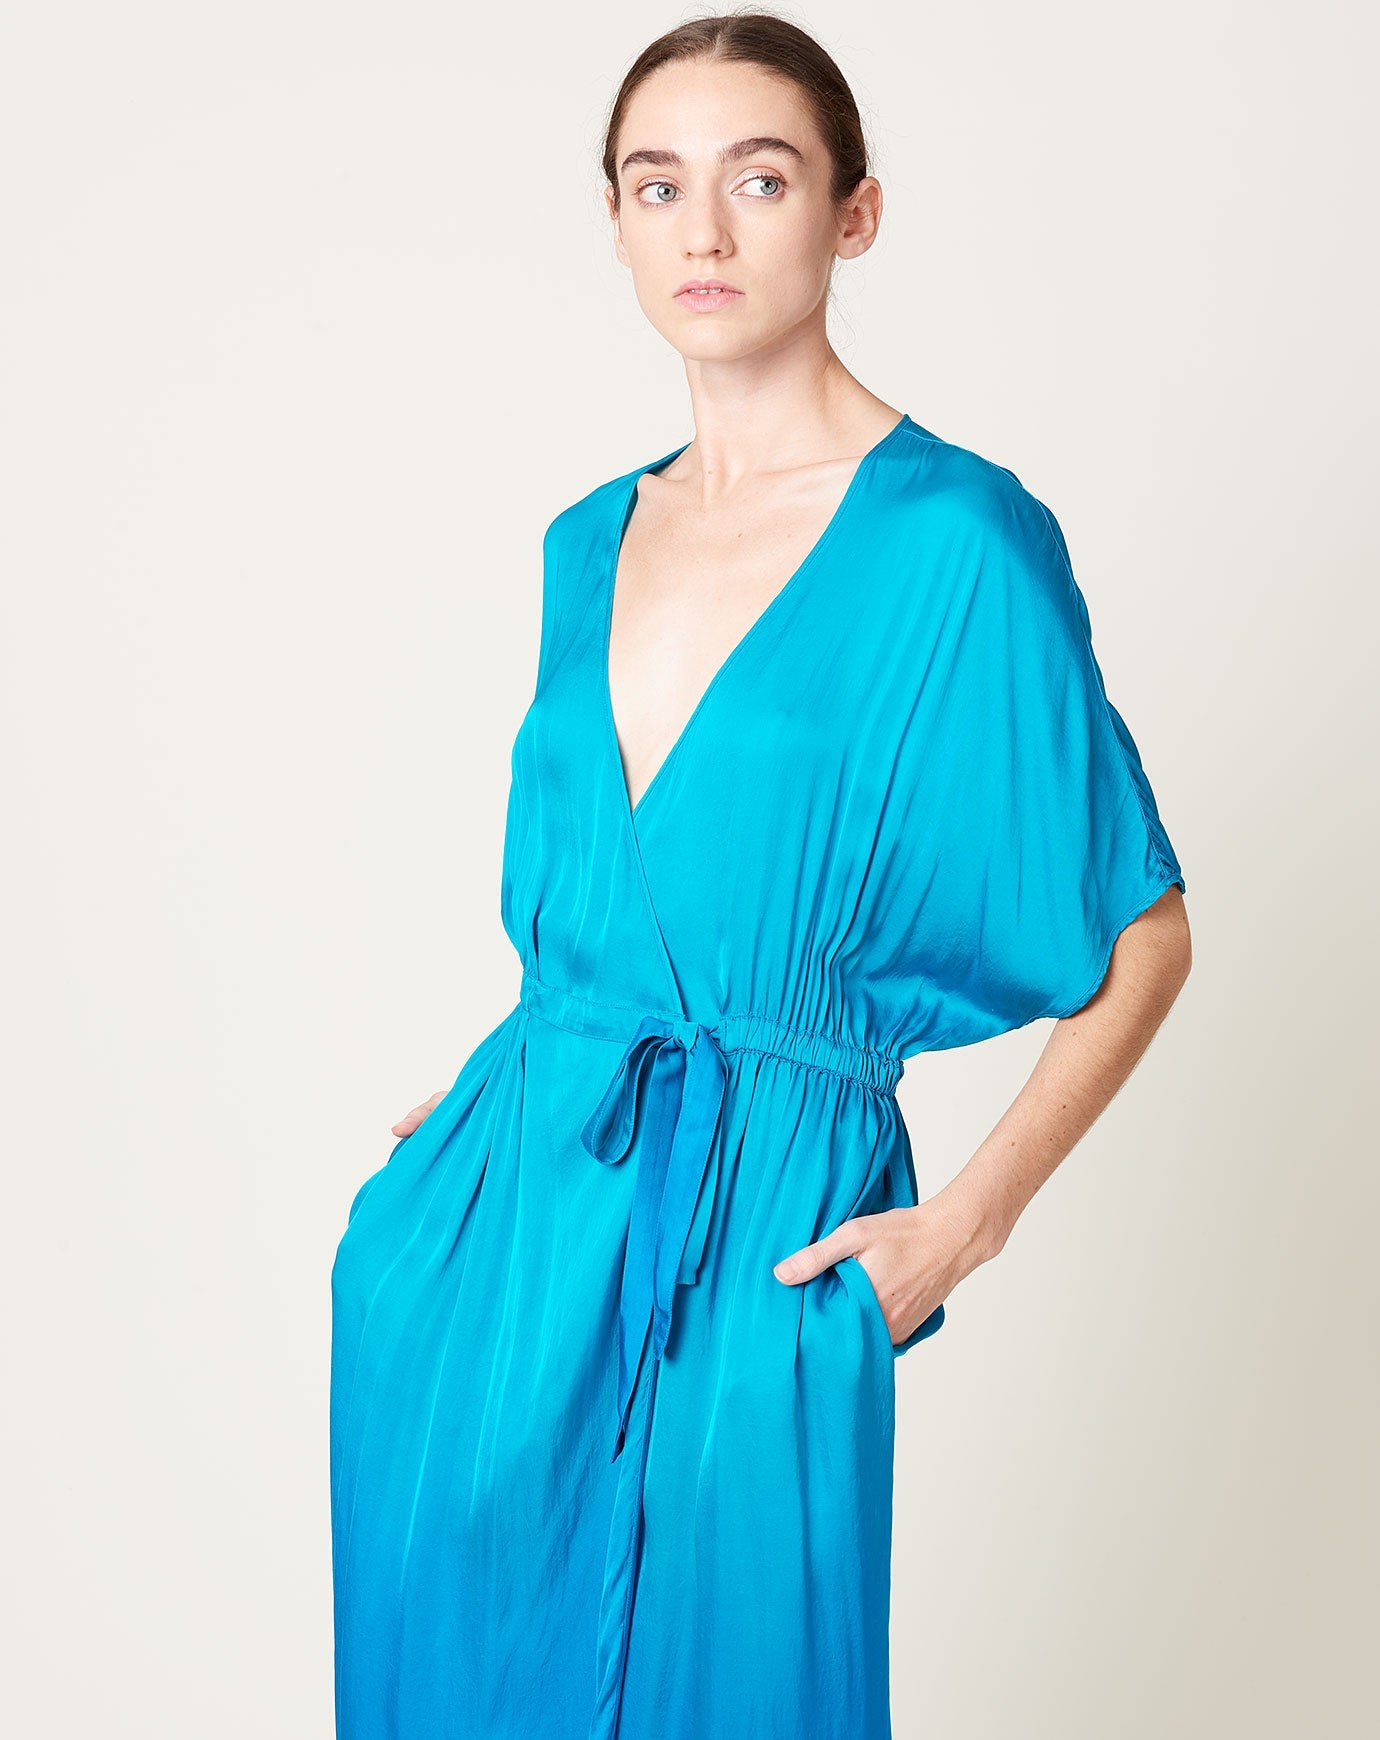 Diane Dress in Aqua Dip Dye | Raquel Allegra | Covet + Lou